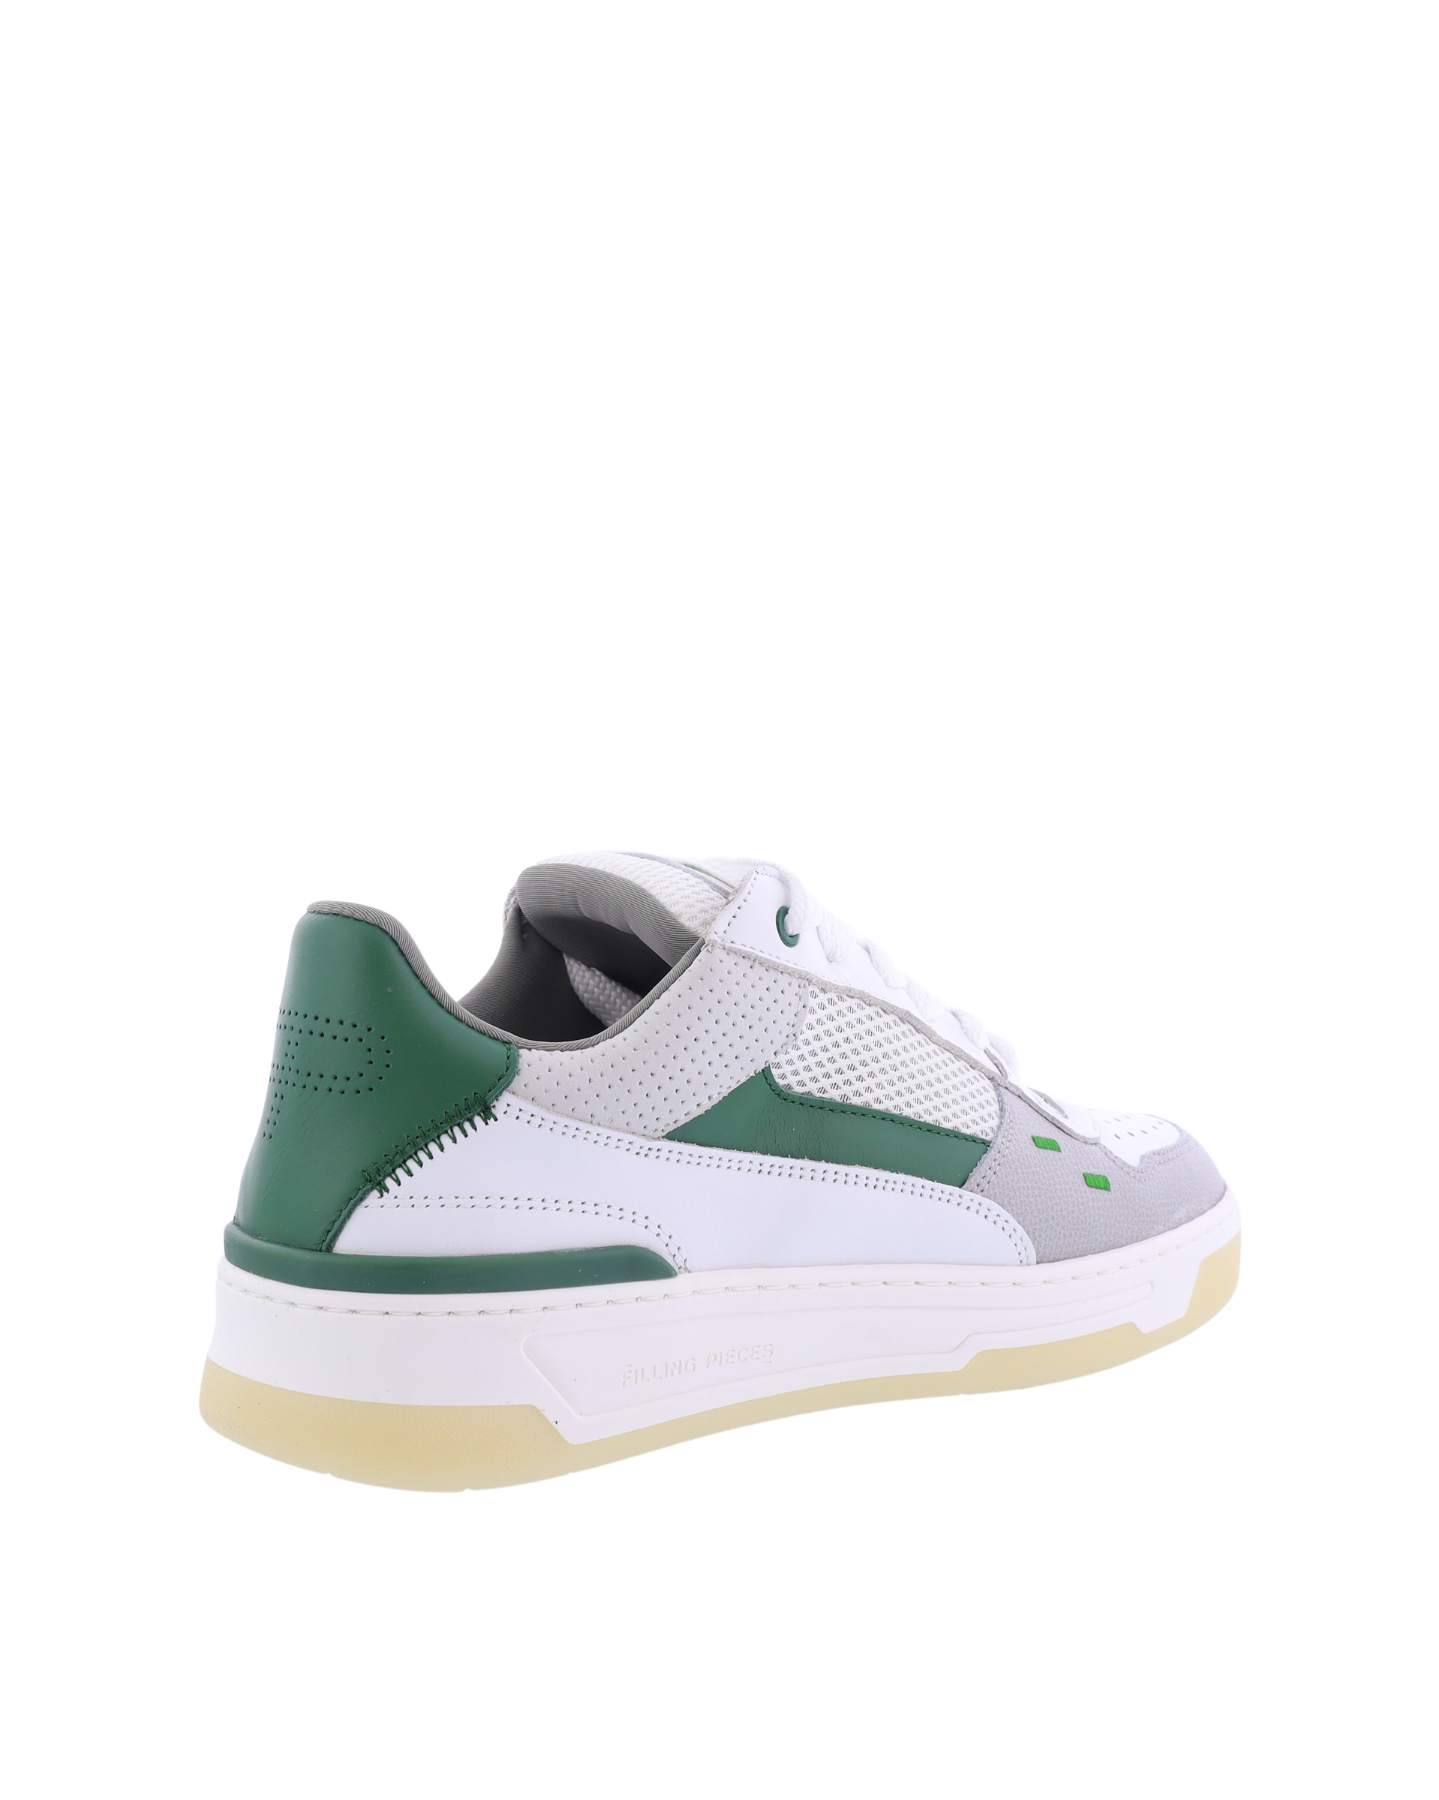 Heren Cruiser Sneaker Wit/Groen